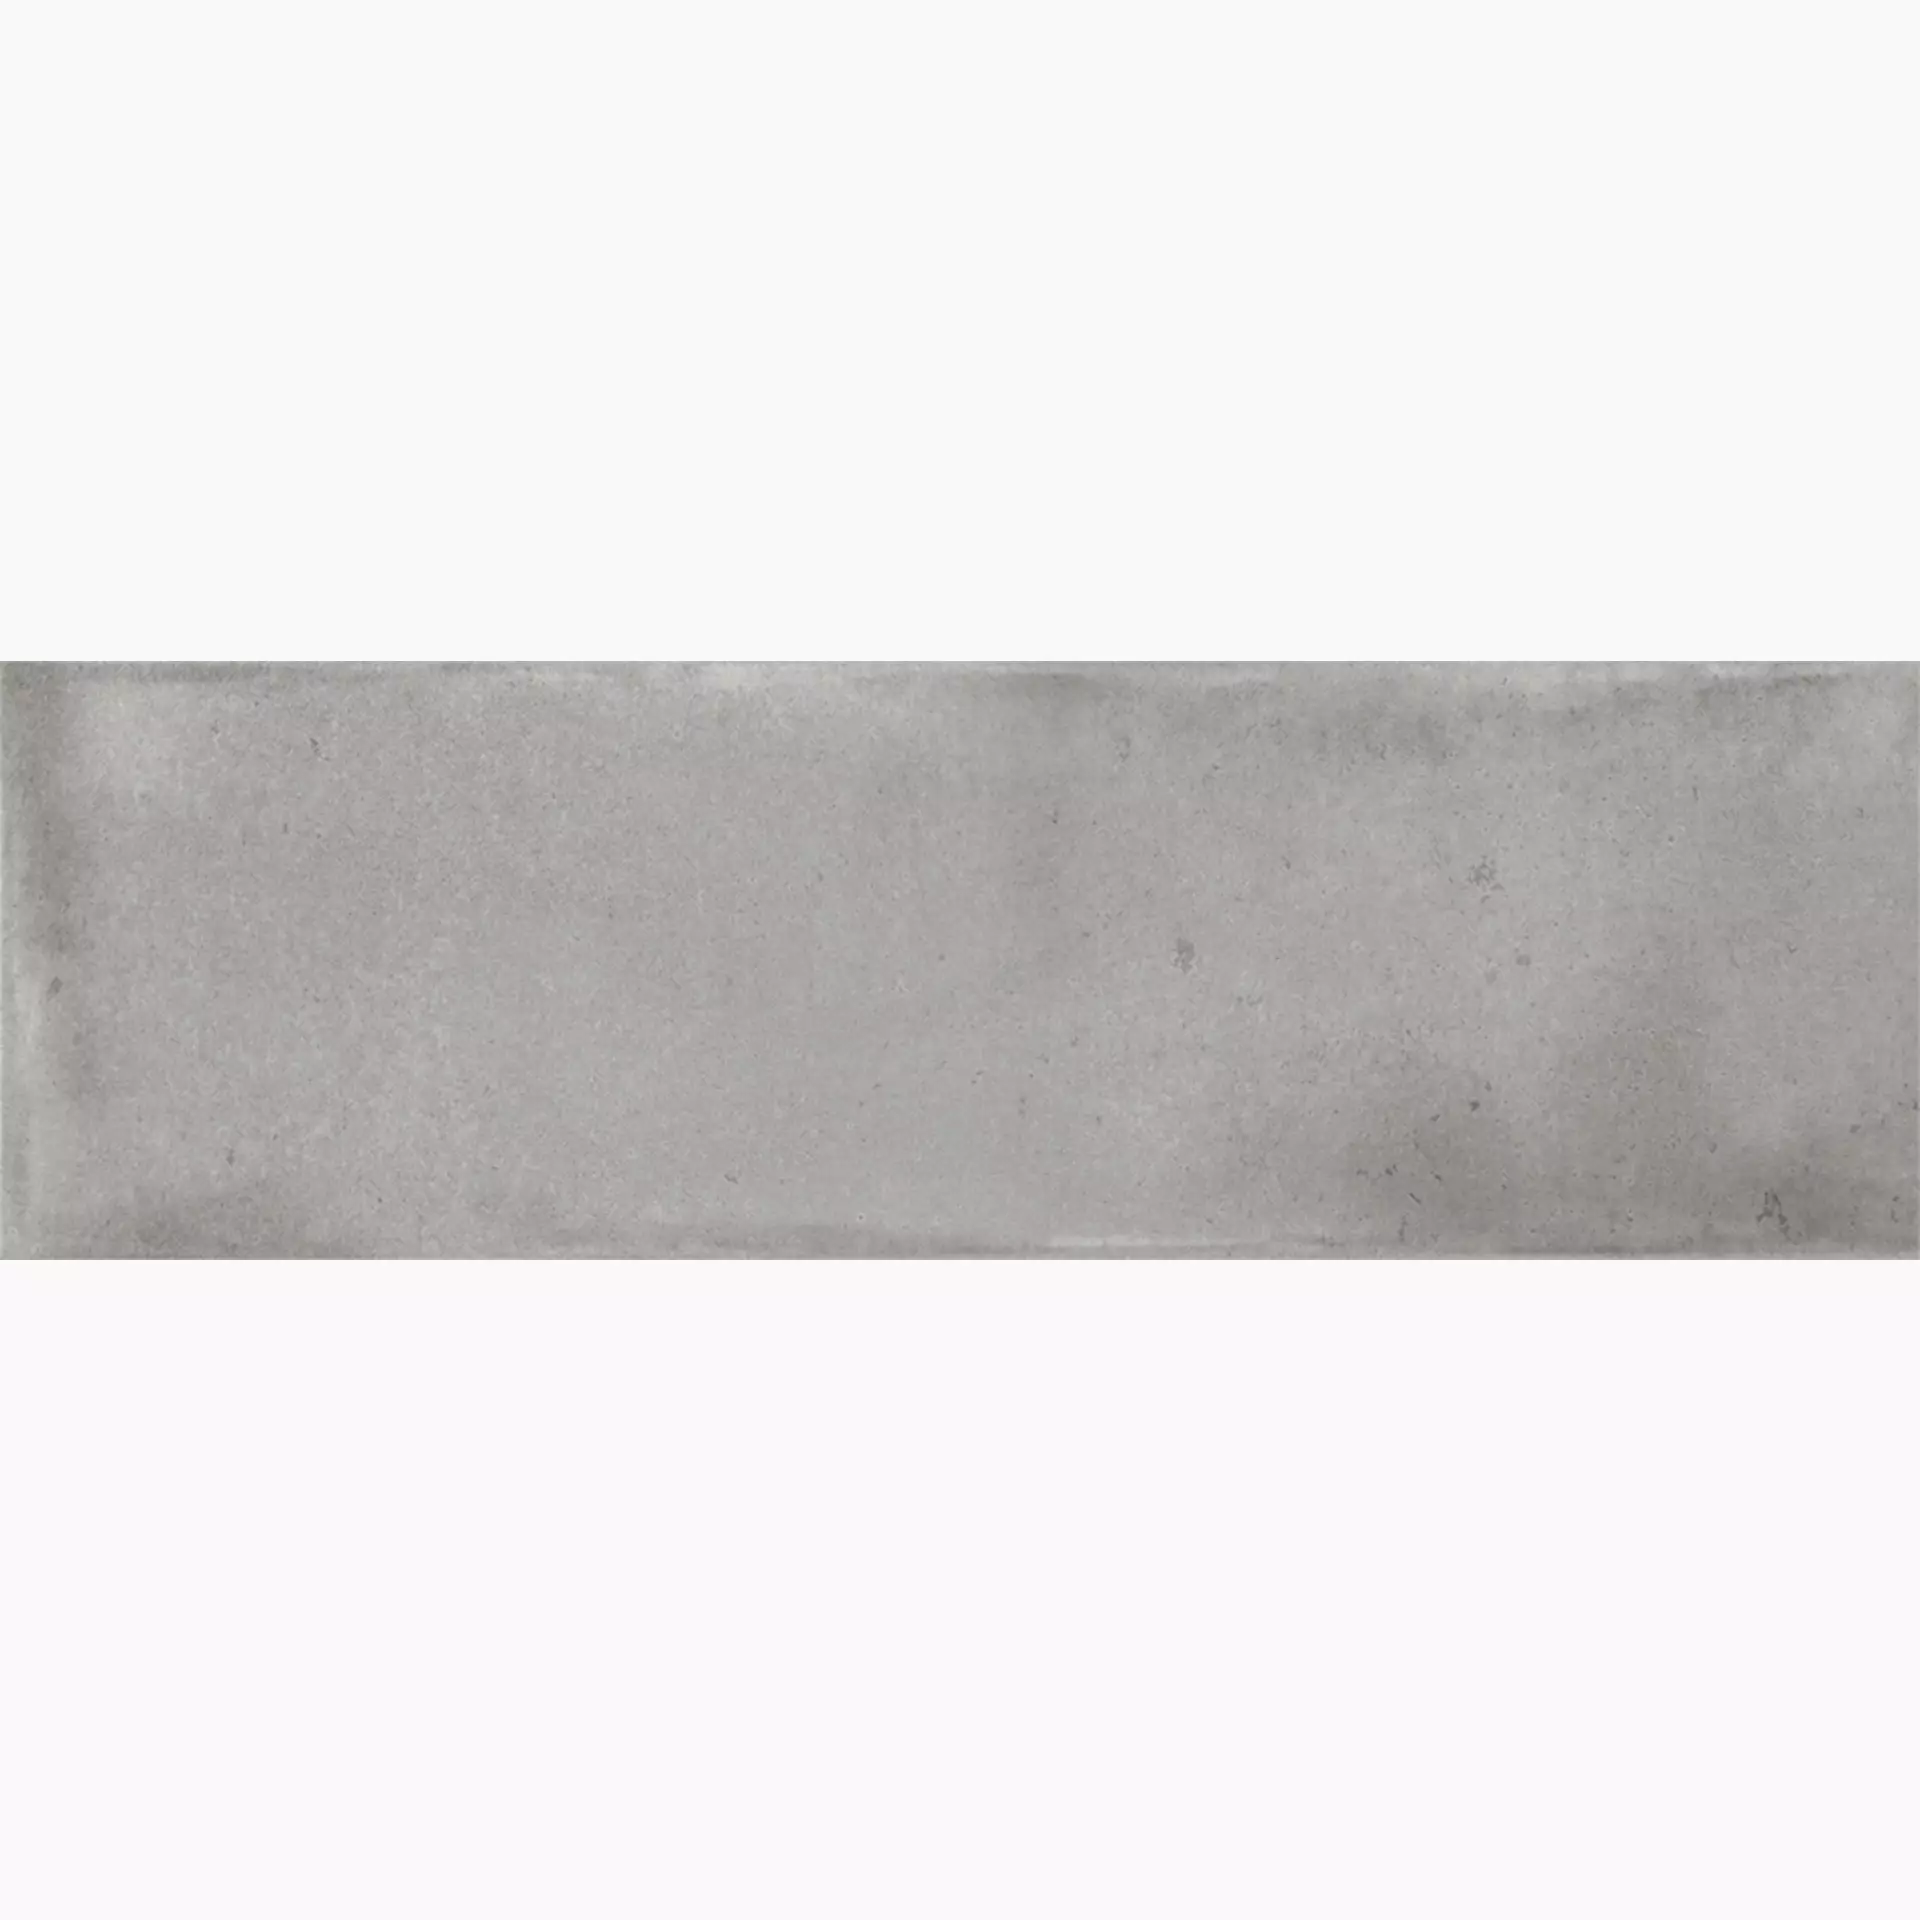 La Fabbrica – AVA Small Grey Bright 180033 5,1x16,1cm 9mm